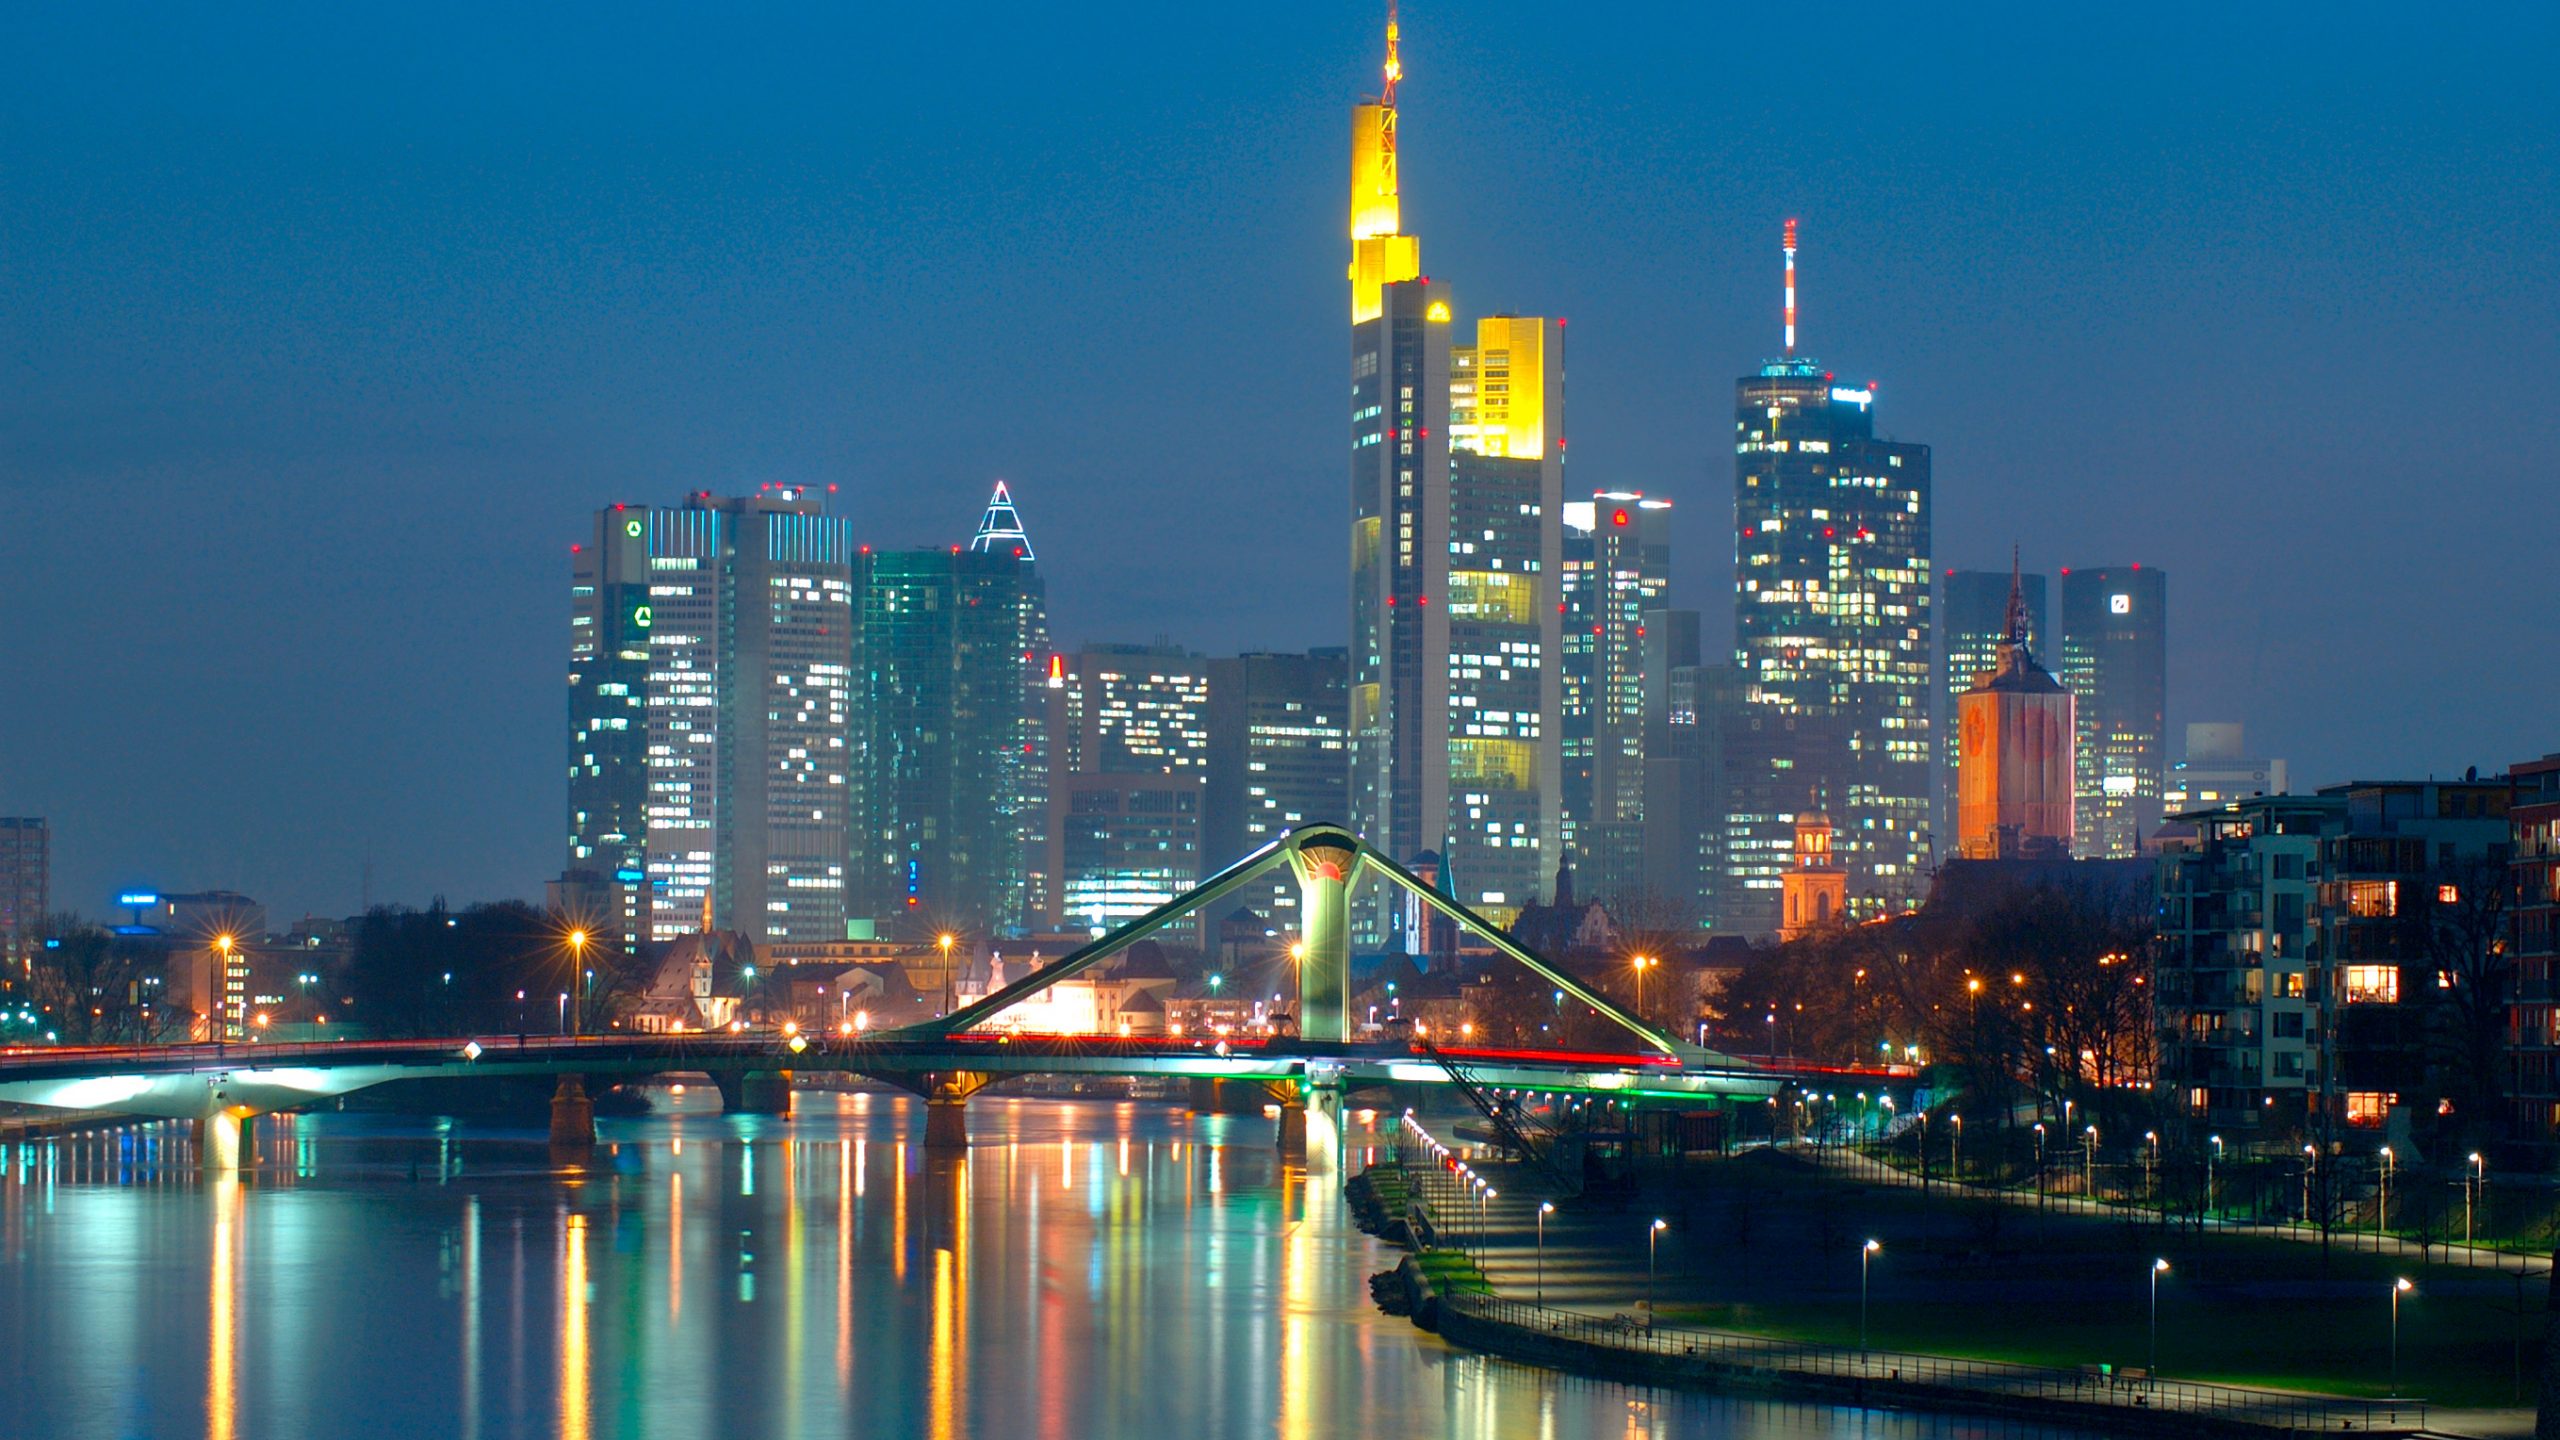 Du visar för närvarande Frankfurt am Main – Tysklands ledande finansstad